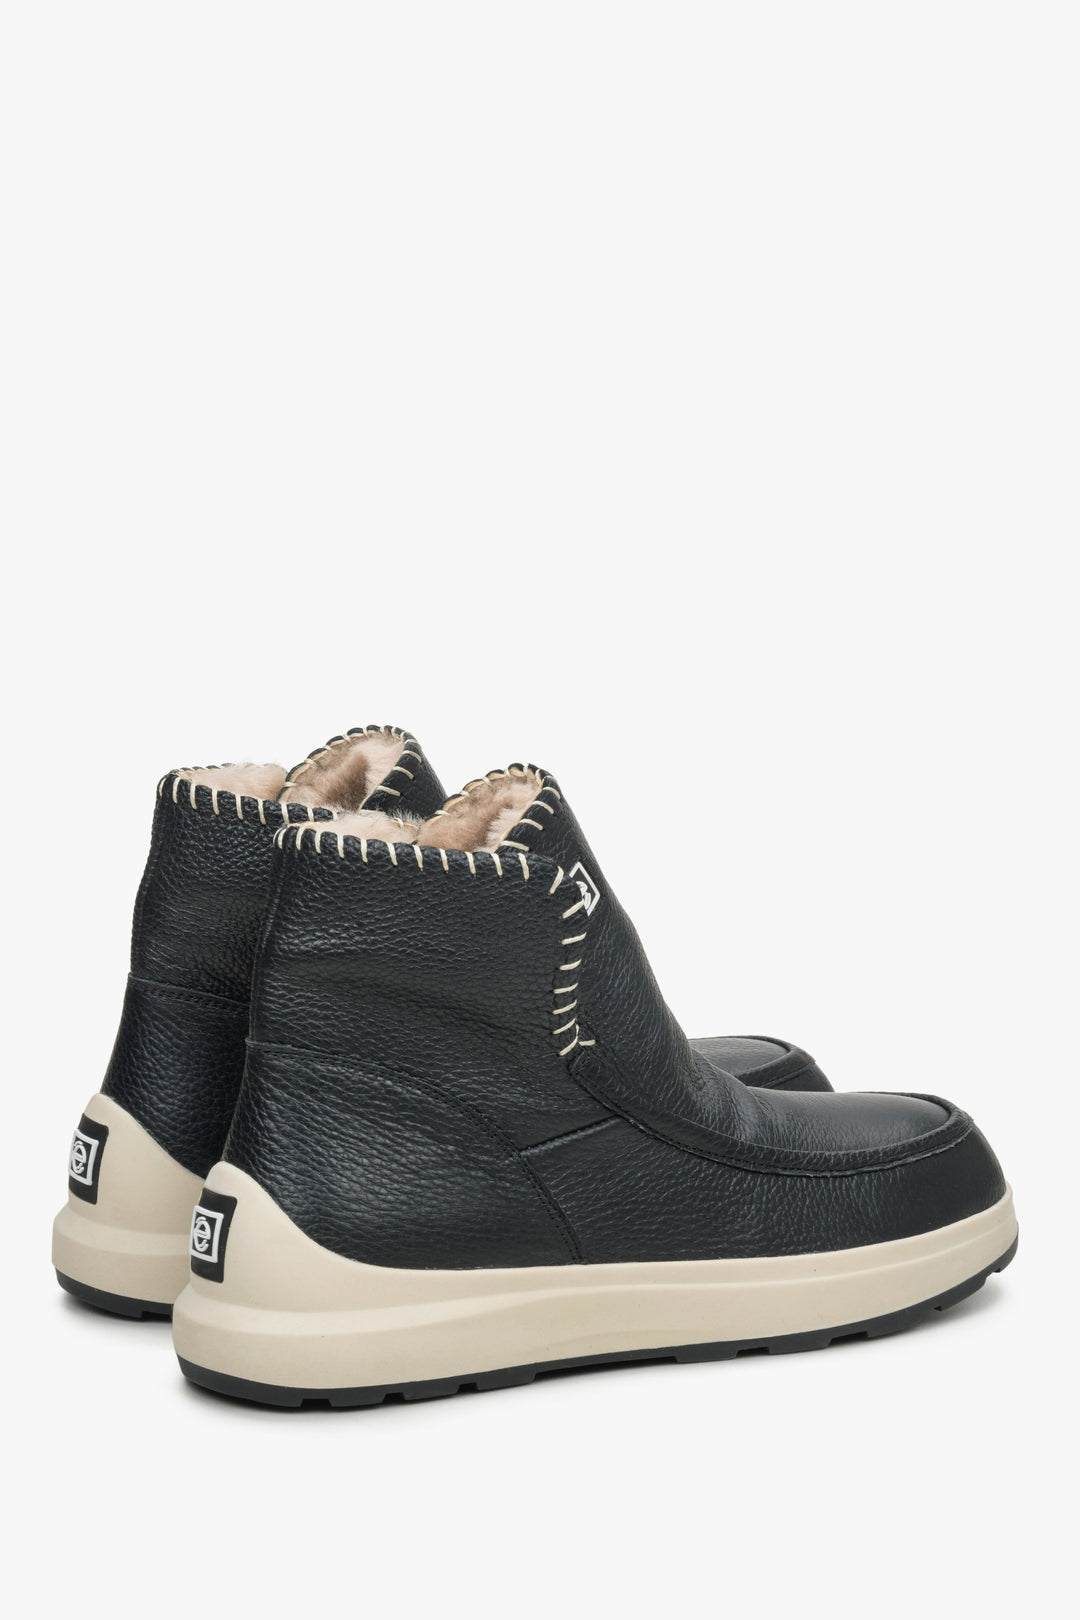 Damskie śniegowce z futra i skóry naturalnej w kolorze czarnym - zbliżenie na zapiętek i linię boczną butów.